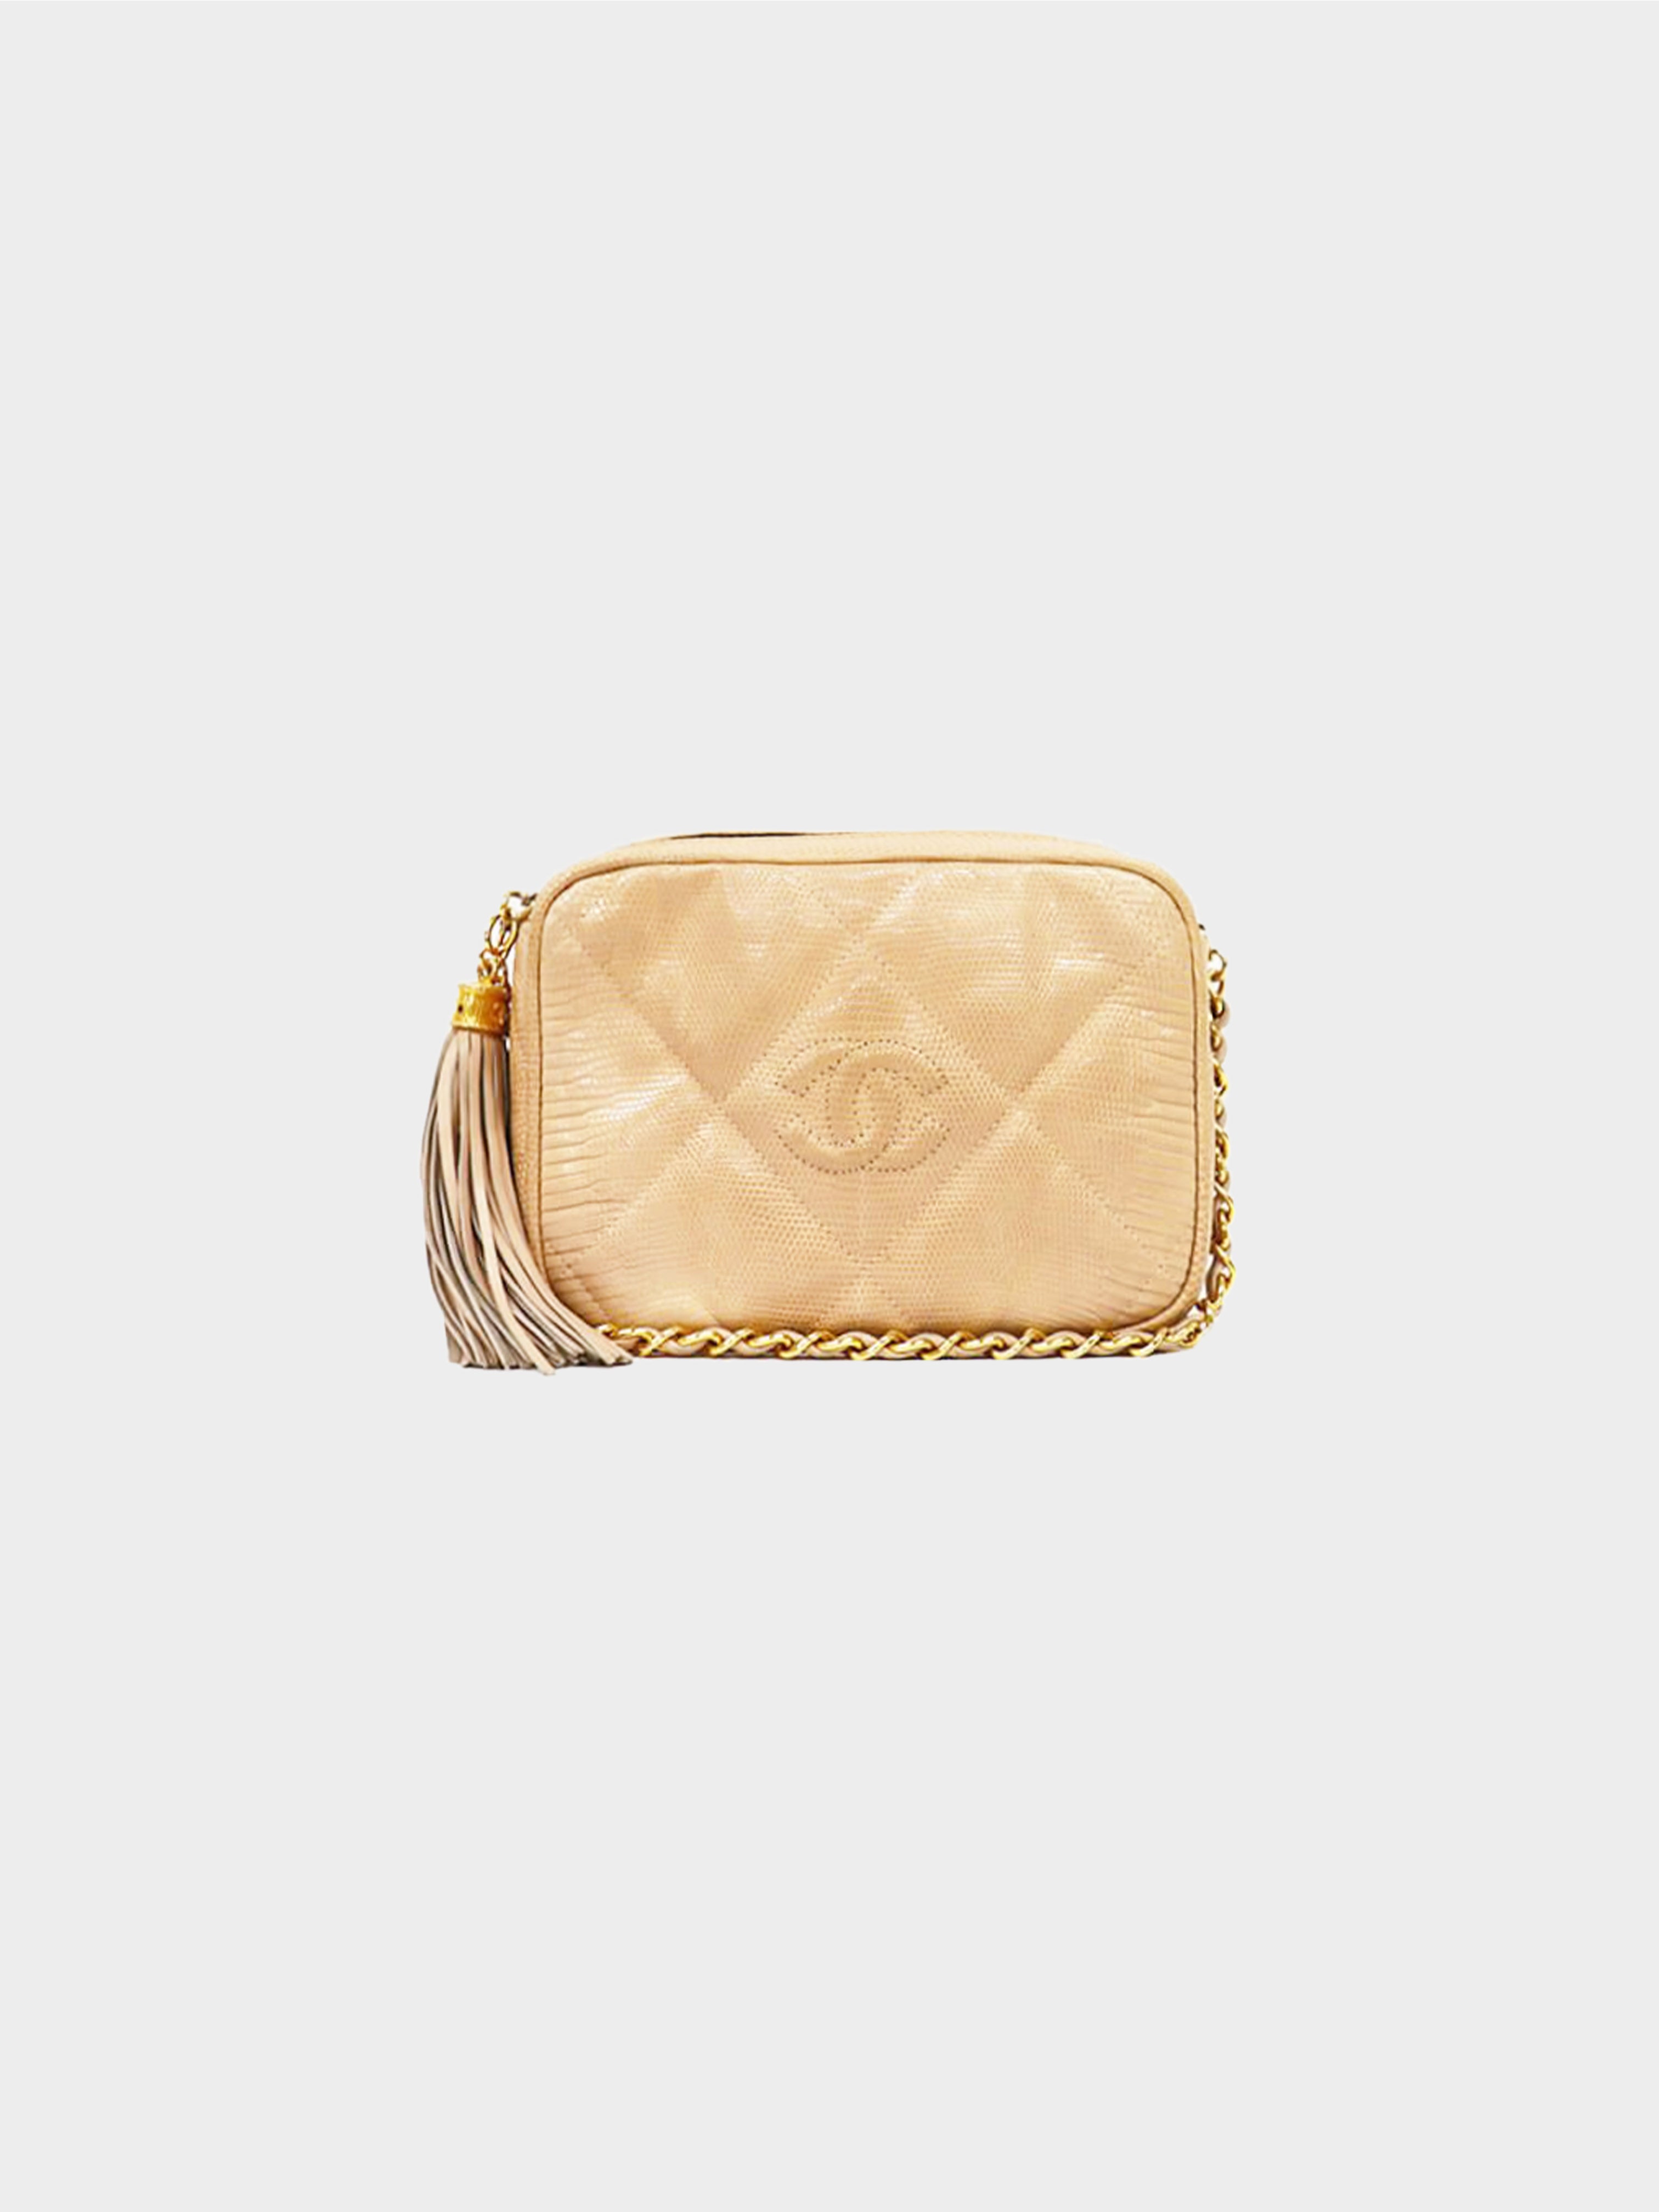 Chanel Bowling Bag Caviar/Lizard